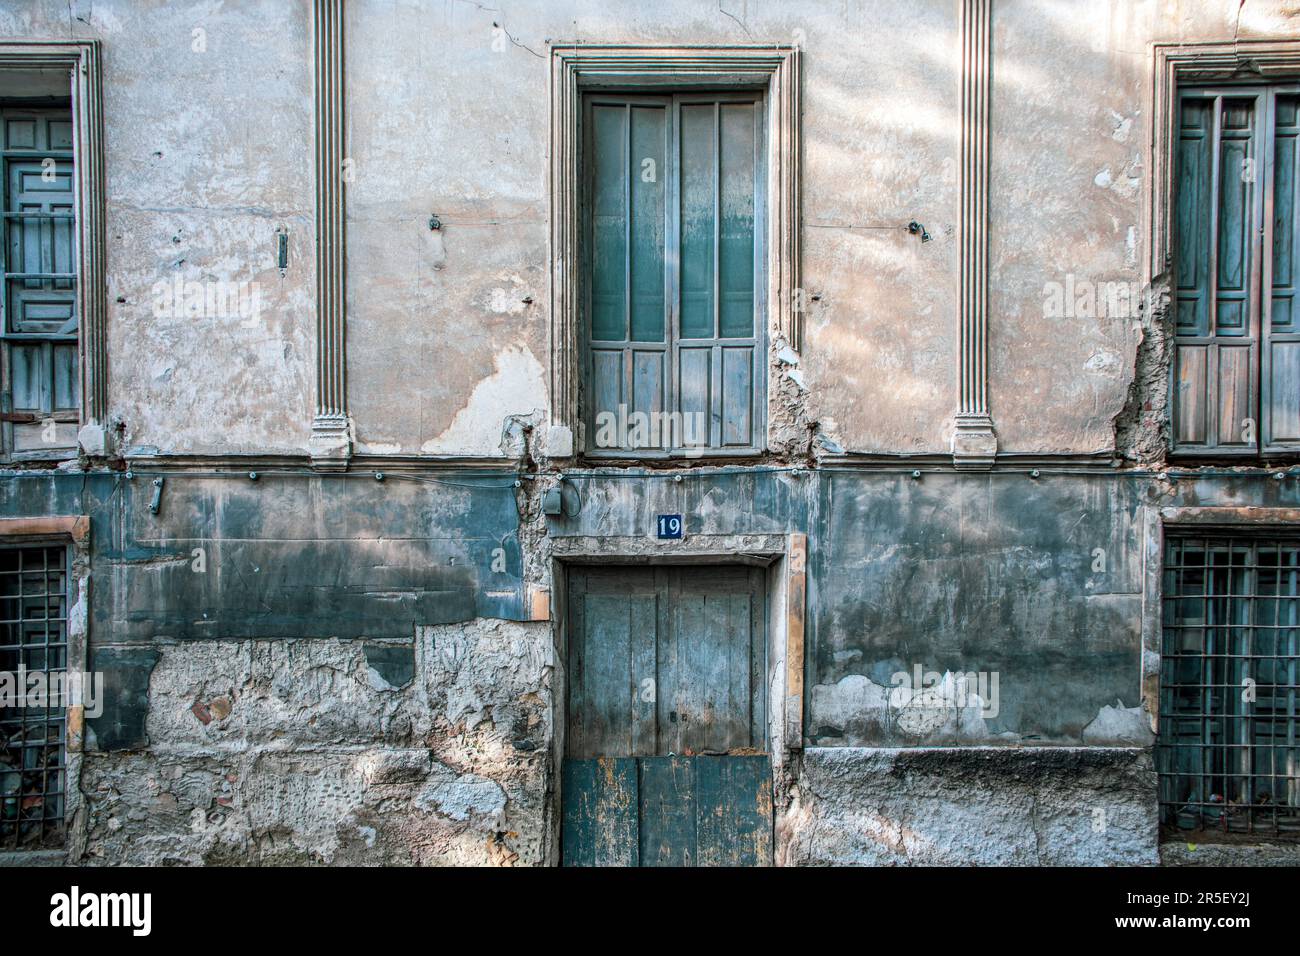 Façade grisâtre vieillie par le temps d'un bâtiment typique de la vieille ville, numéro 19, de Caravaca de la Cruz, Murcie, Espagne Banque D'Images